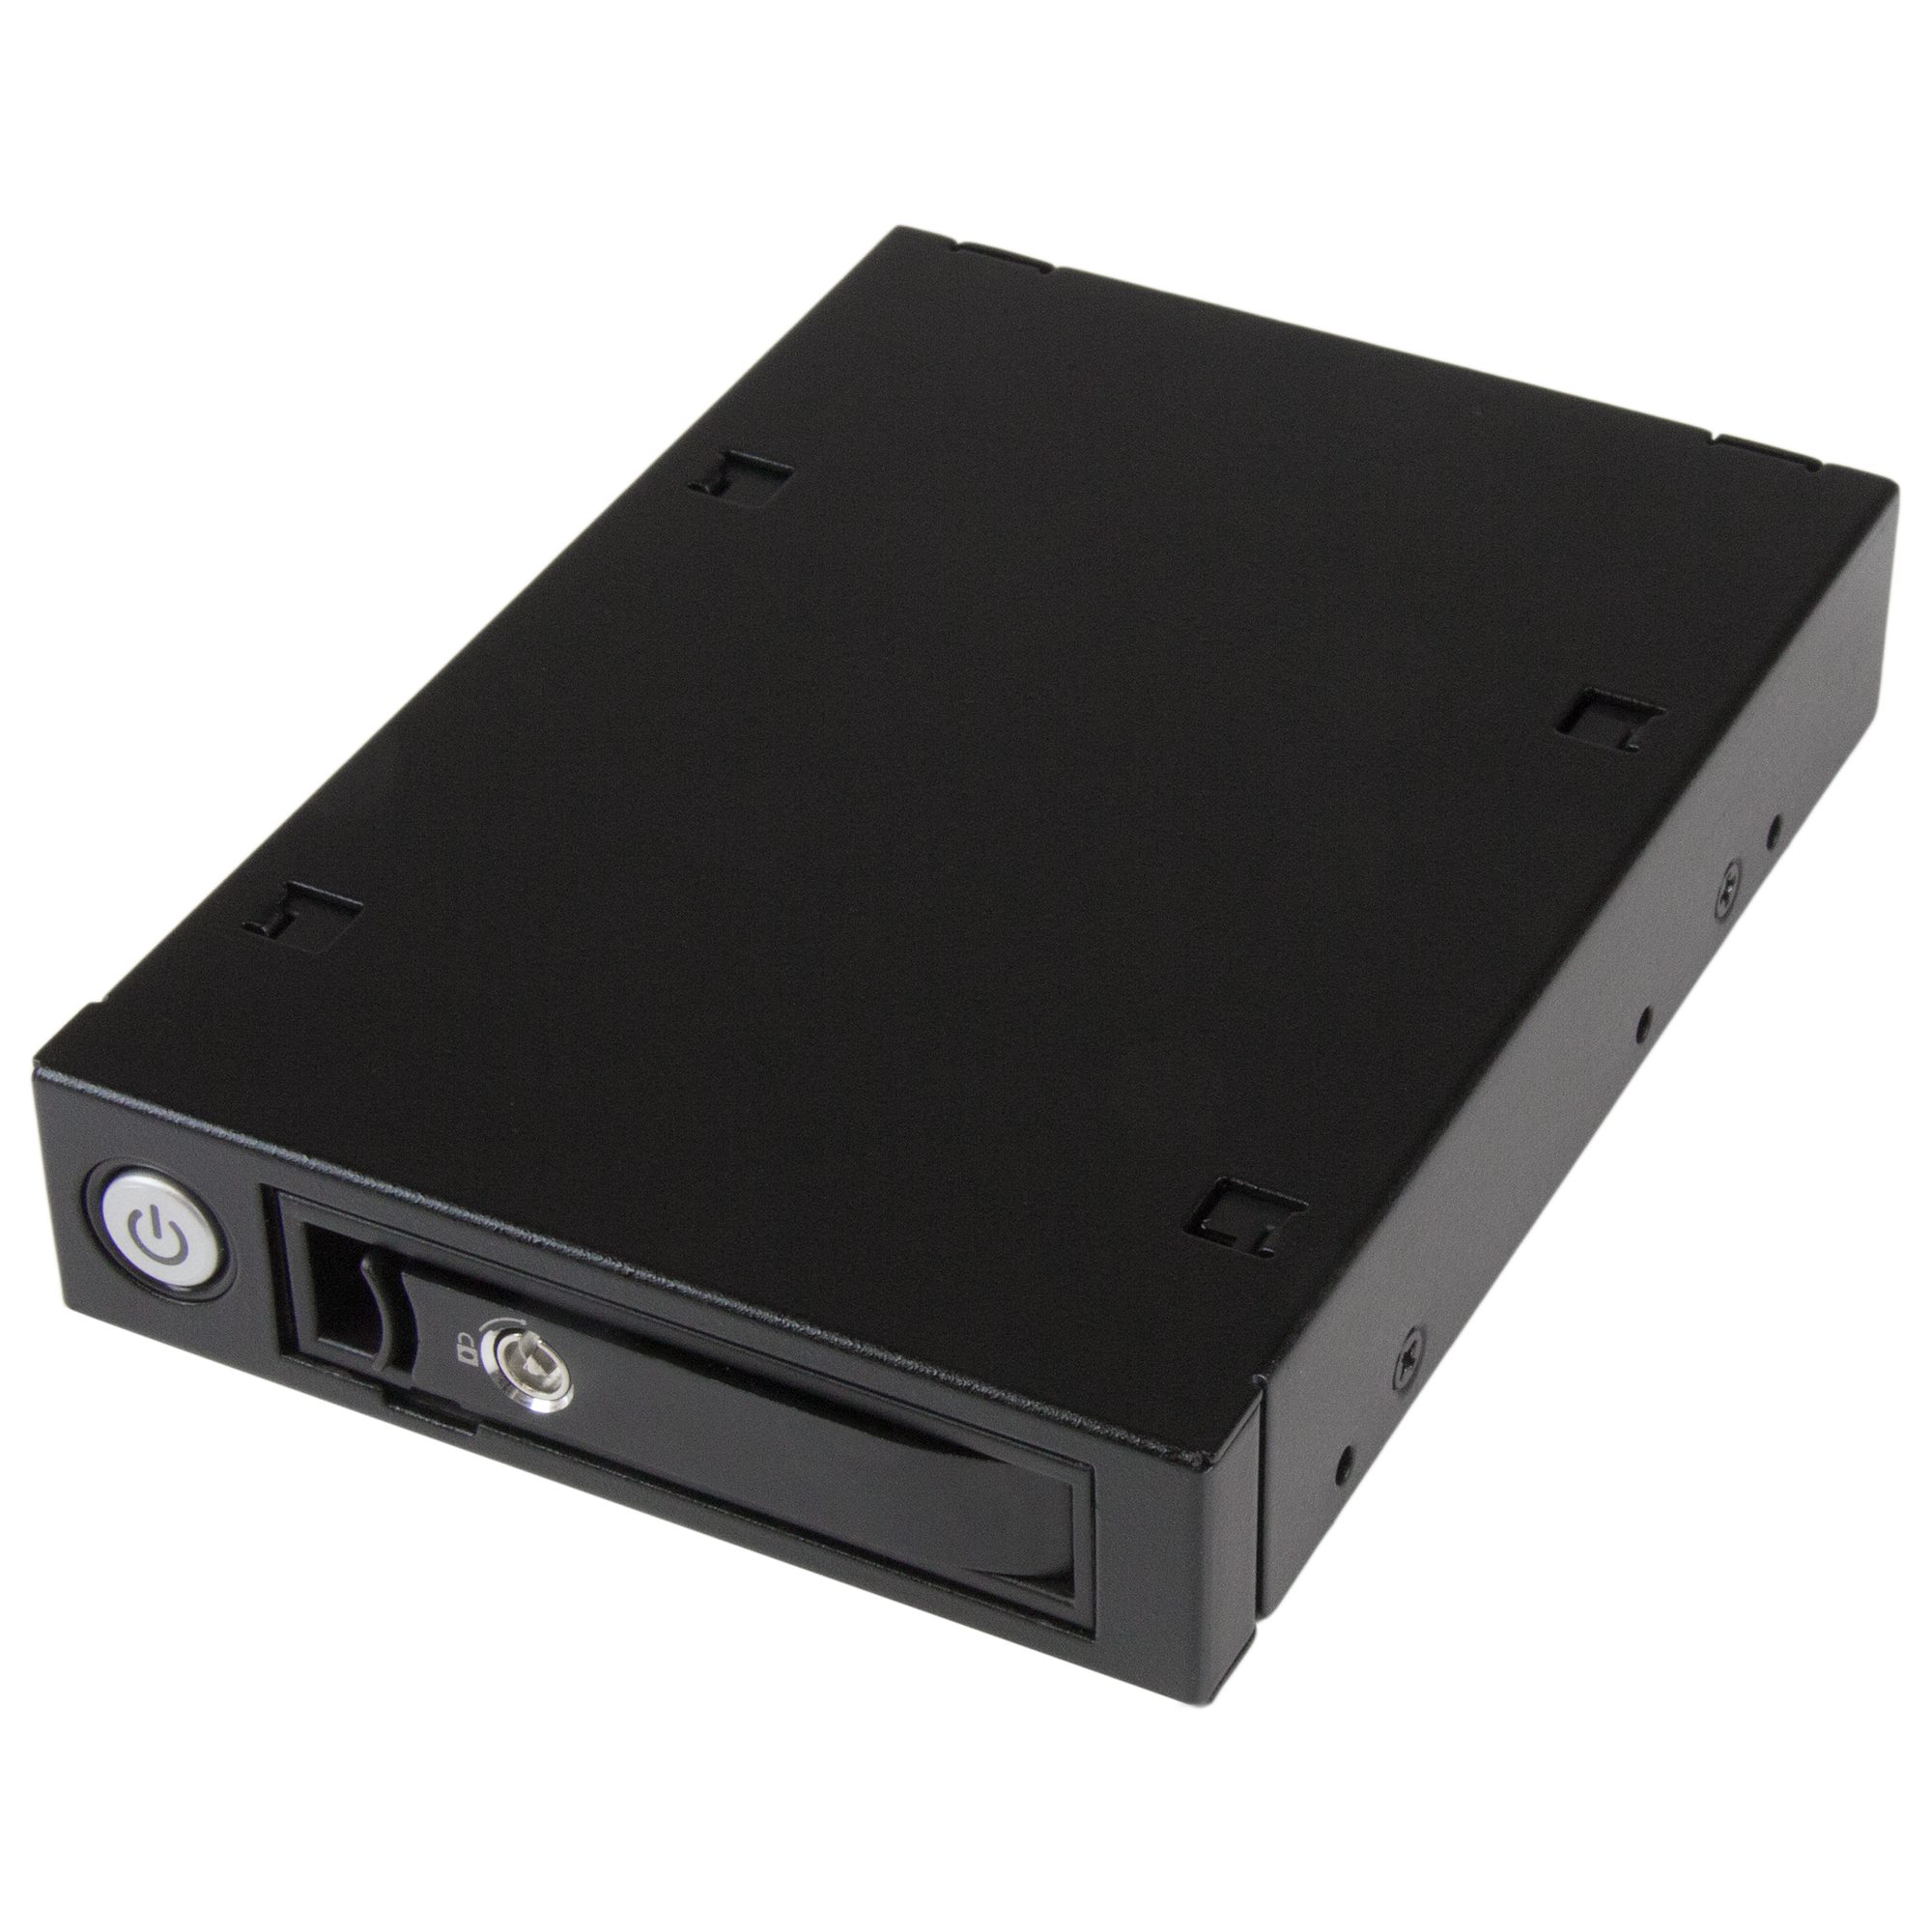 2.5インチSAS/SATA対応HDD/SSD用モバイルラック - ハードドライブ